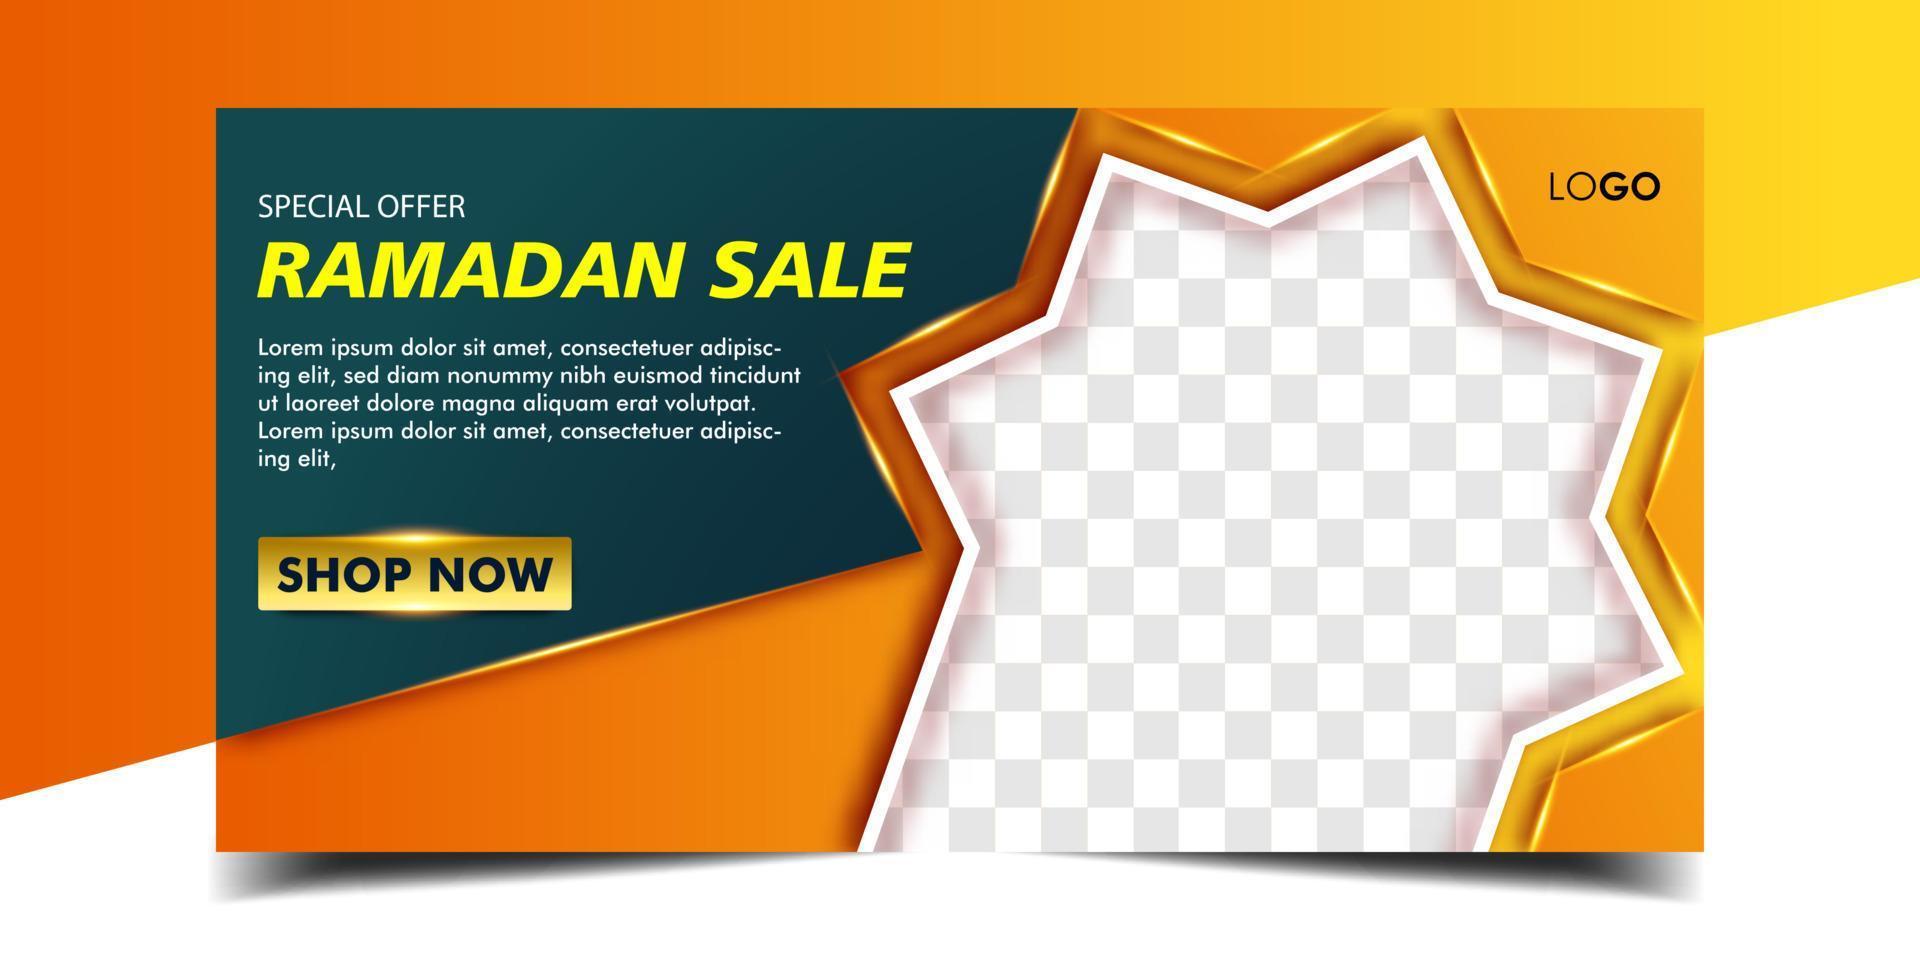 ramadan verkoop horizontale bannersjabloon vector